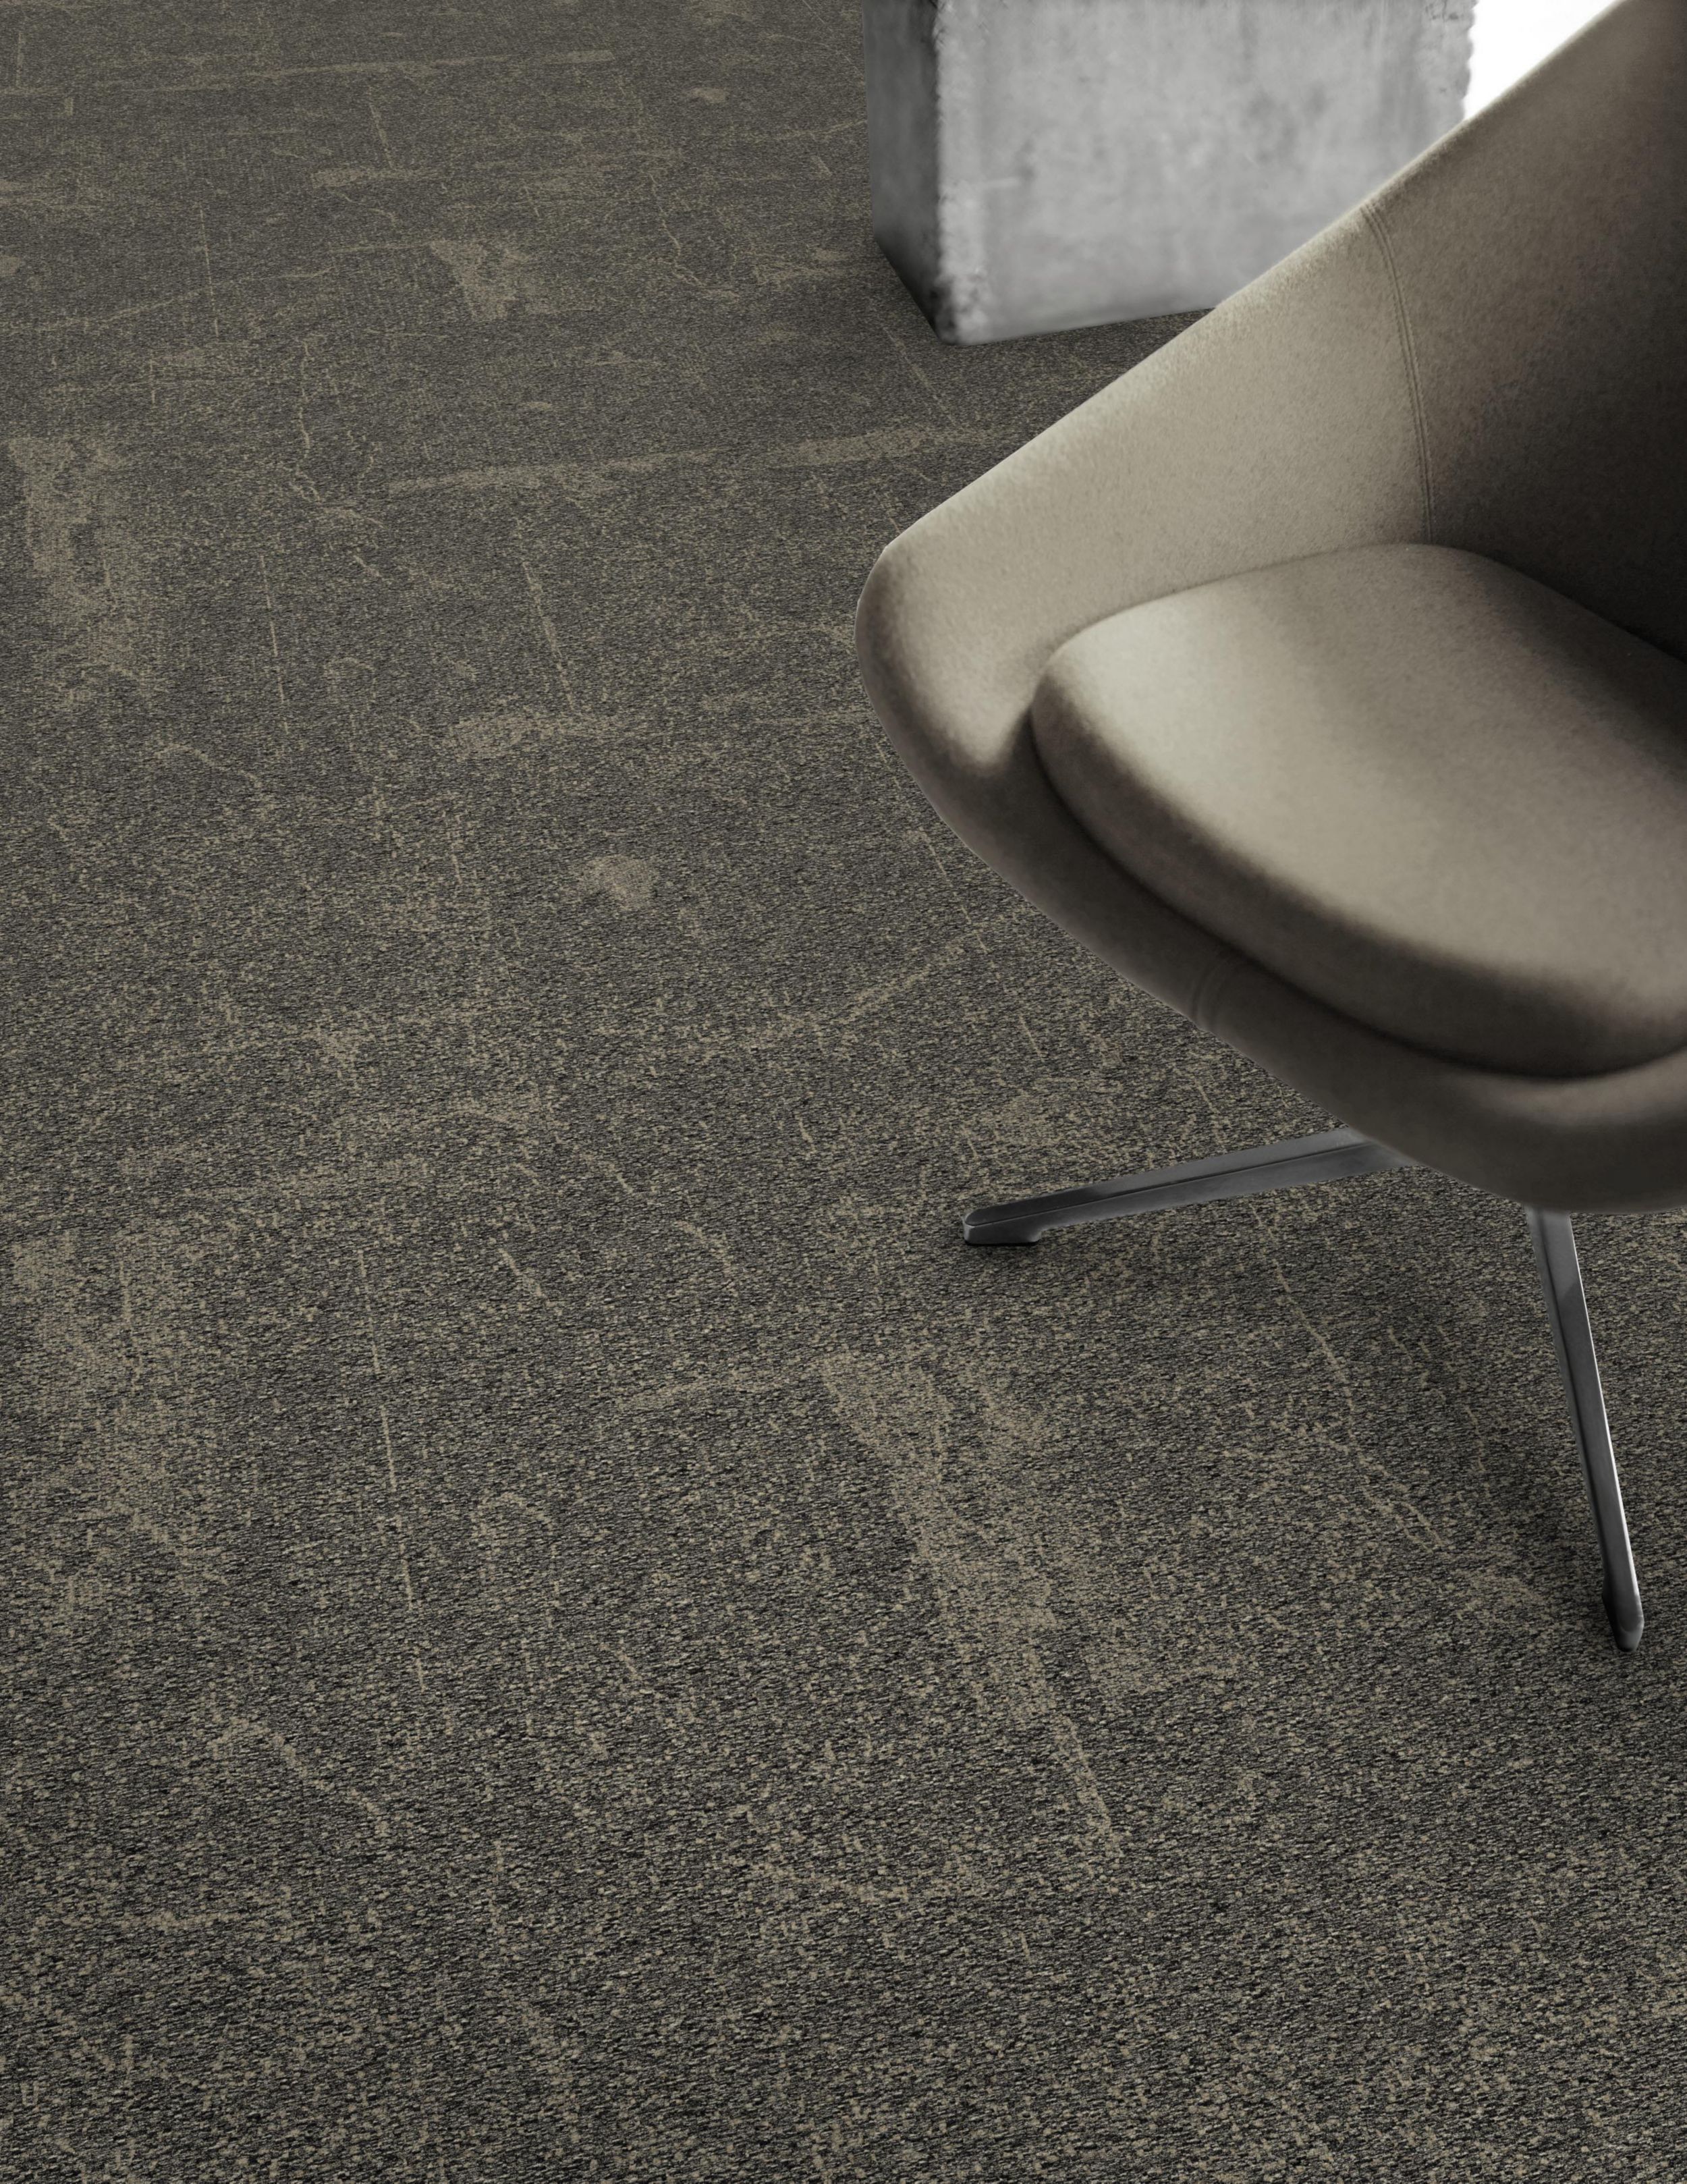 Detail of Interface DL907 carpet tile with chair numéro d’image 4